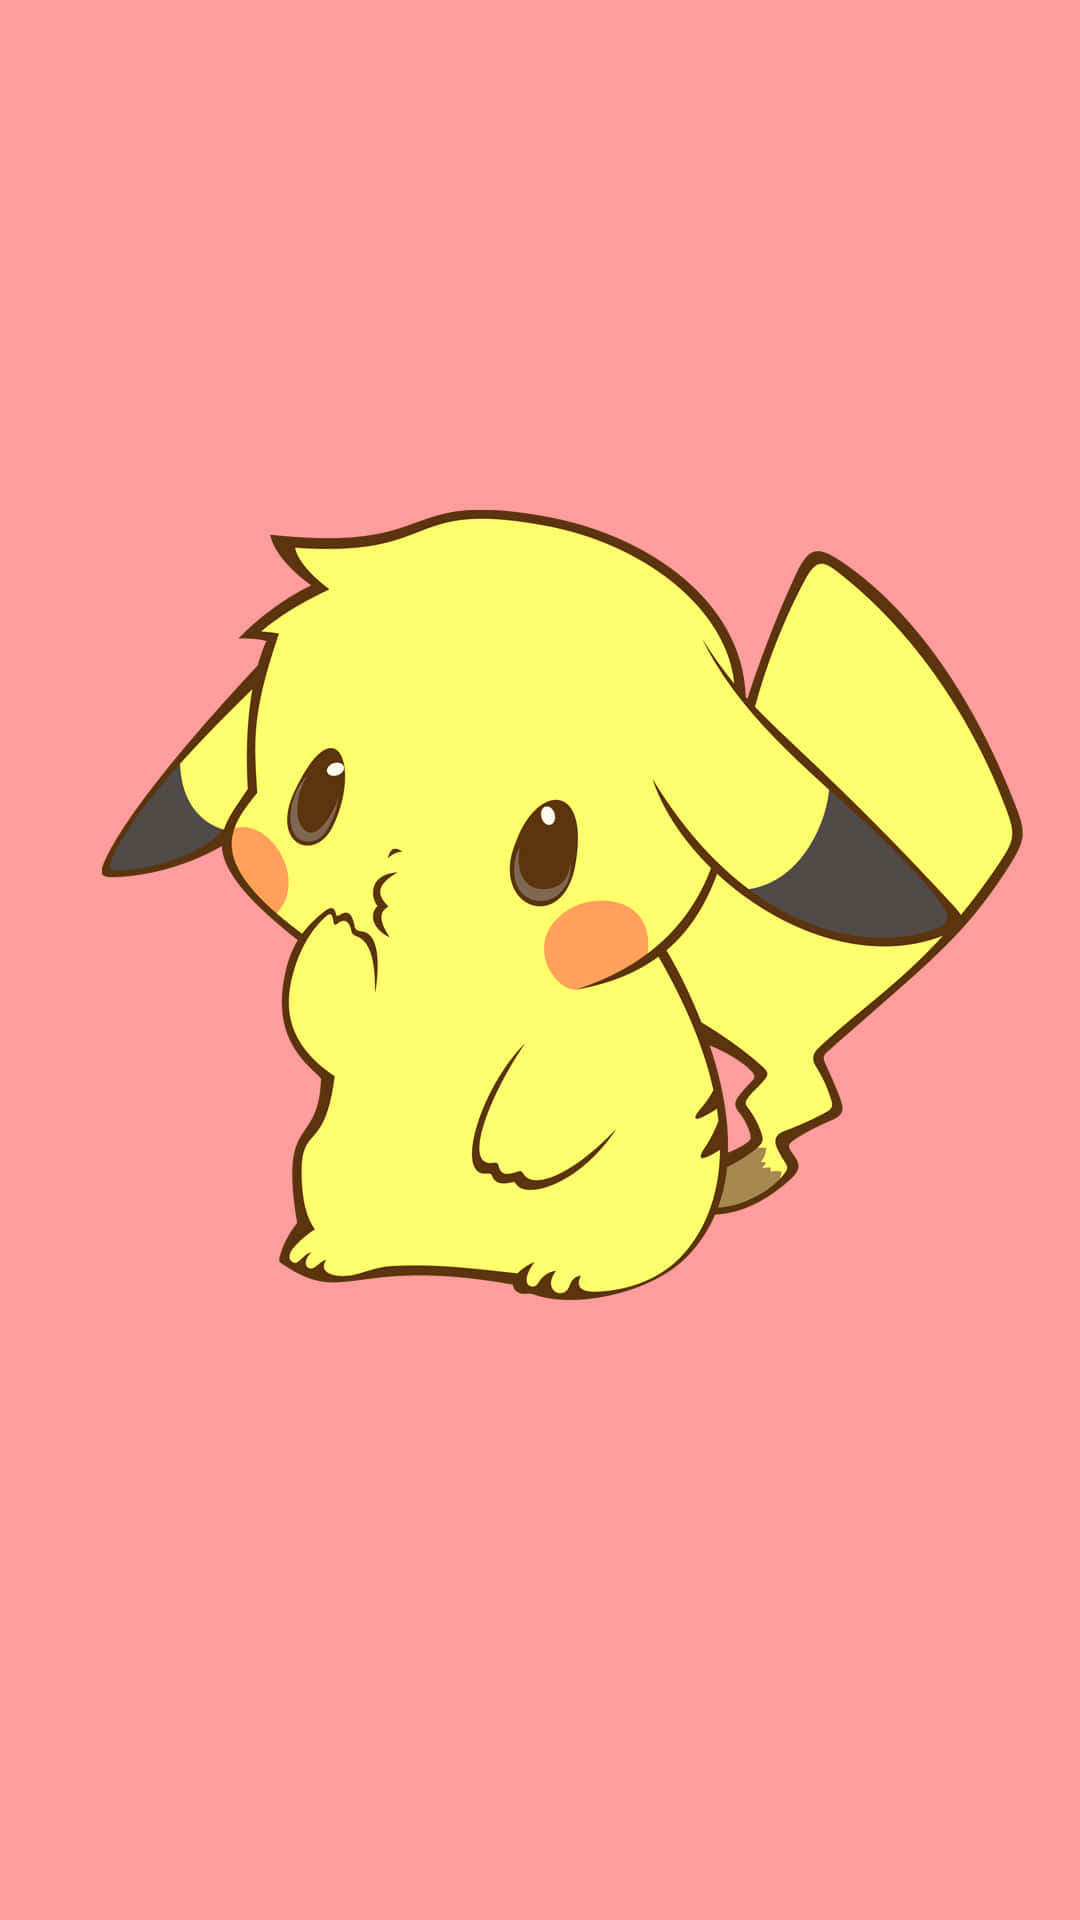 En helt ny Pikachu, der ser så sød ud og elsker hvert sekund af livet! Wallpaper